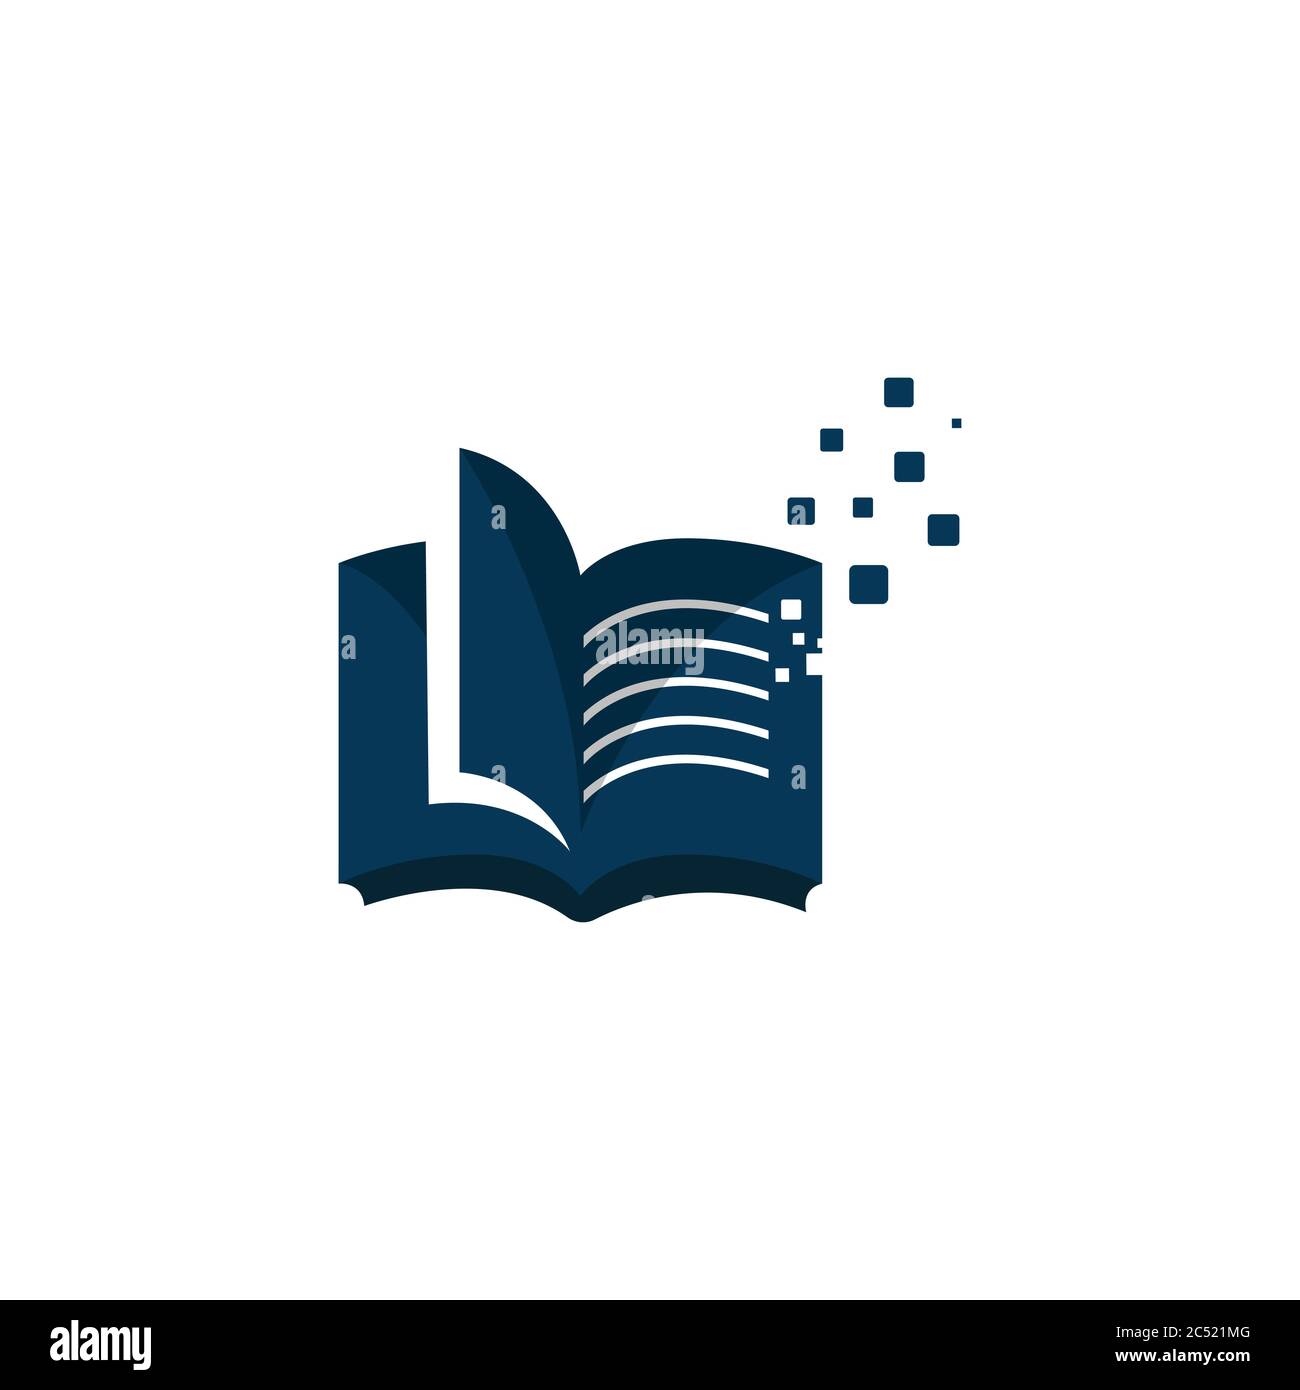 Ebook Logo Design Vector Electronic Library Icon. Digital learning book logo platform design logo vector Stock Vector